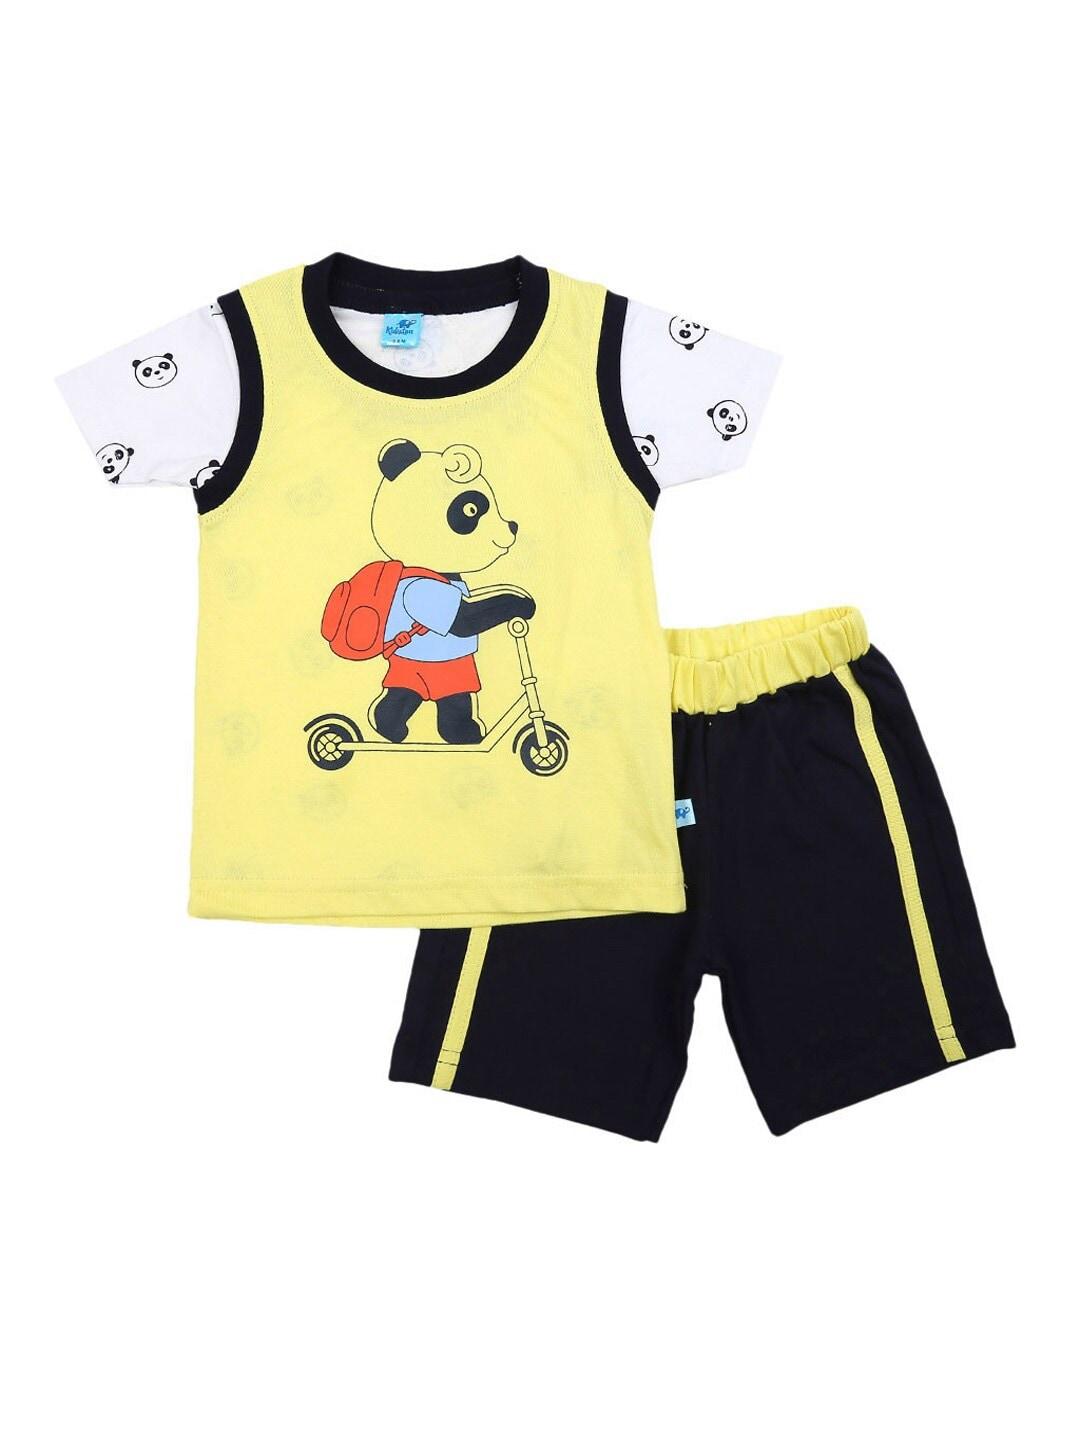 V-Mart Unisex Kids Yellow & Black Printed Clothing Set